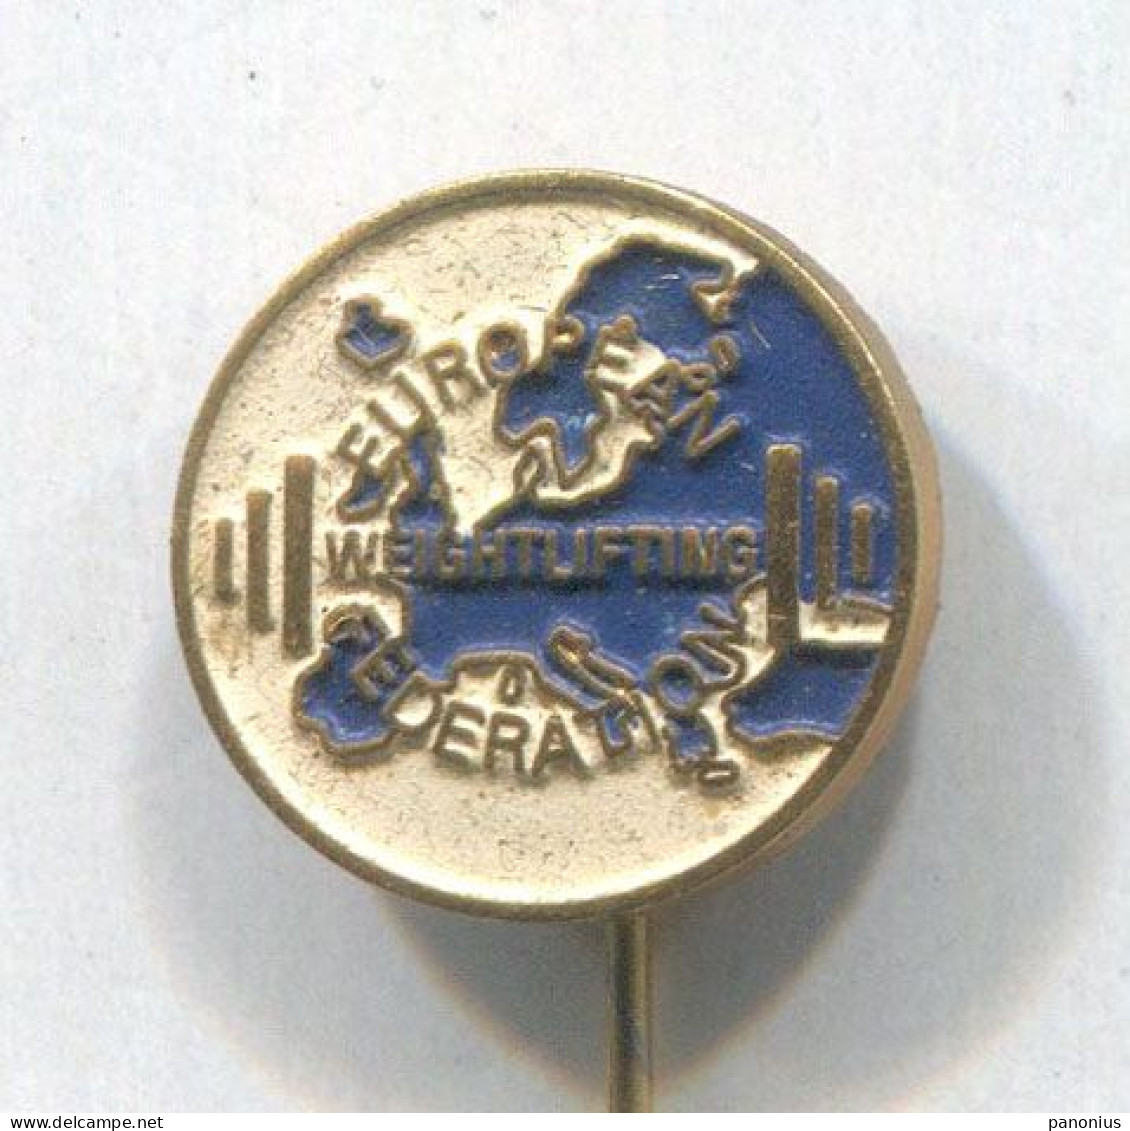 Weightlifting Gewichtheben - European Federation Association, Vintage Pin, Badge, Abzeichen - Halterofilia